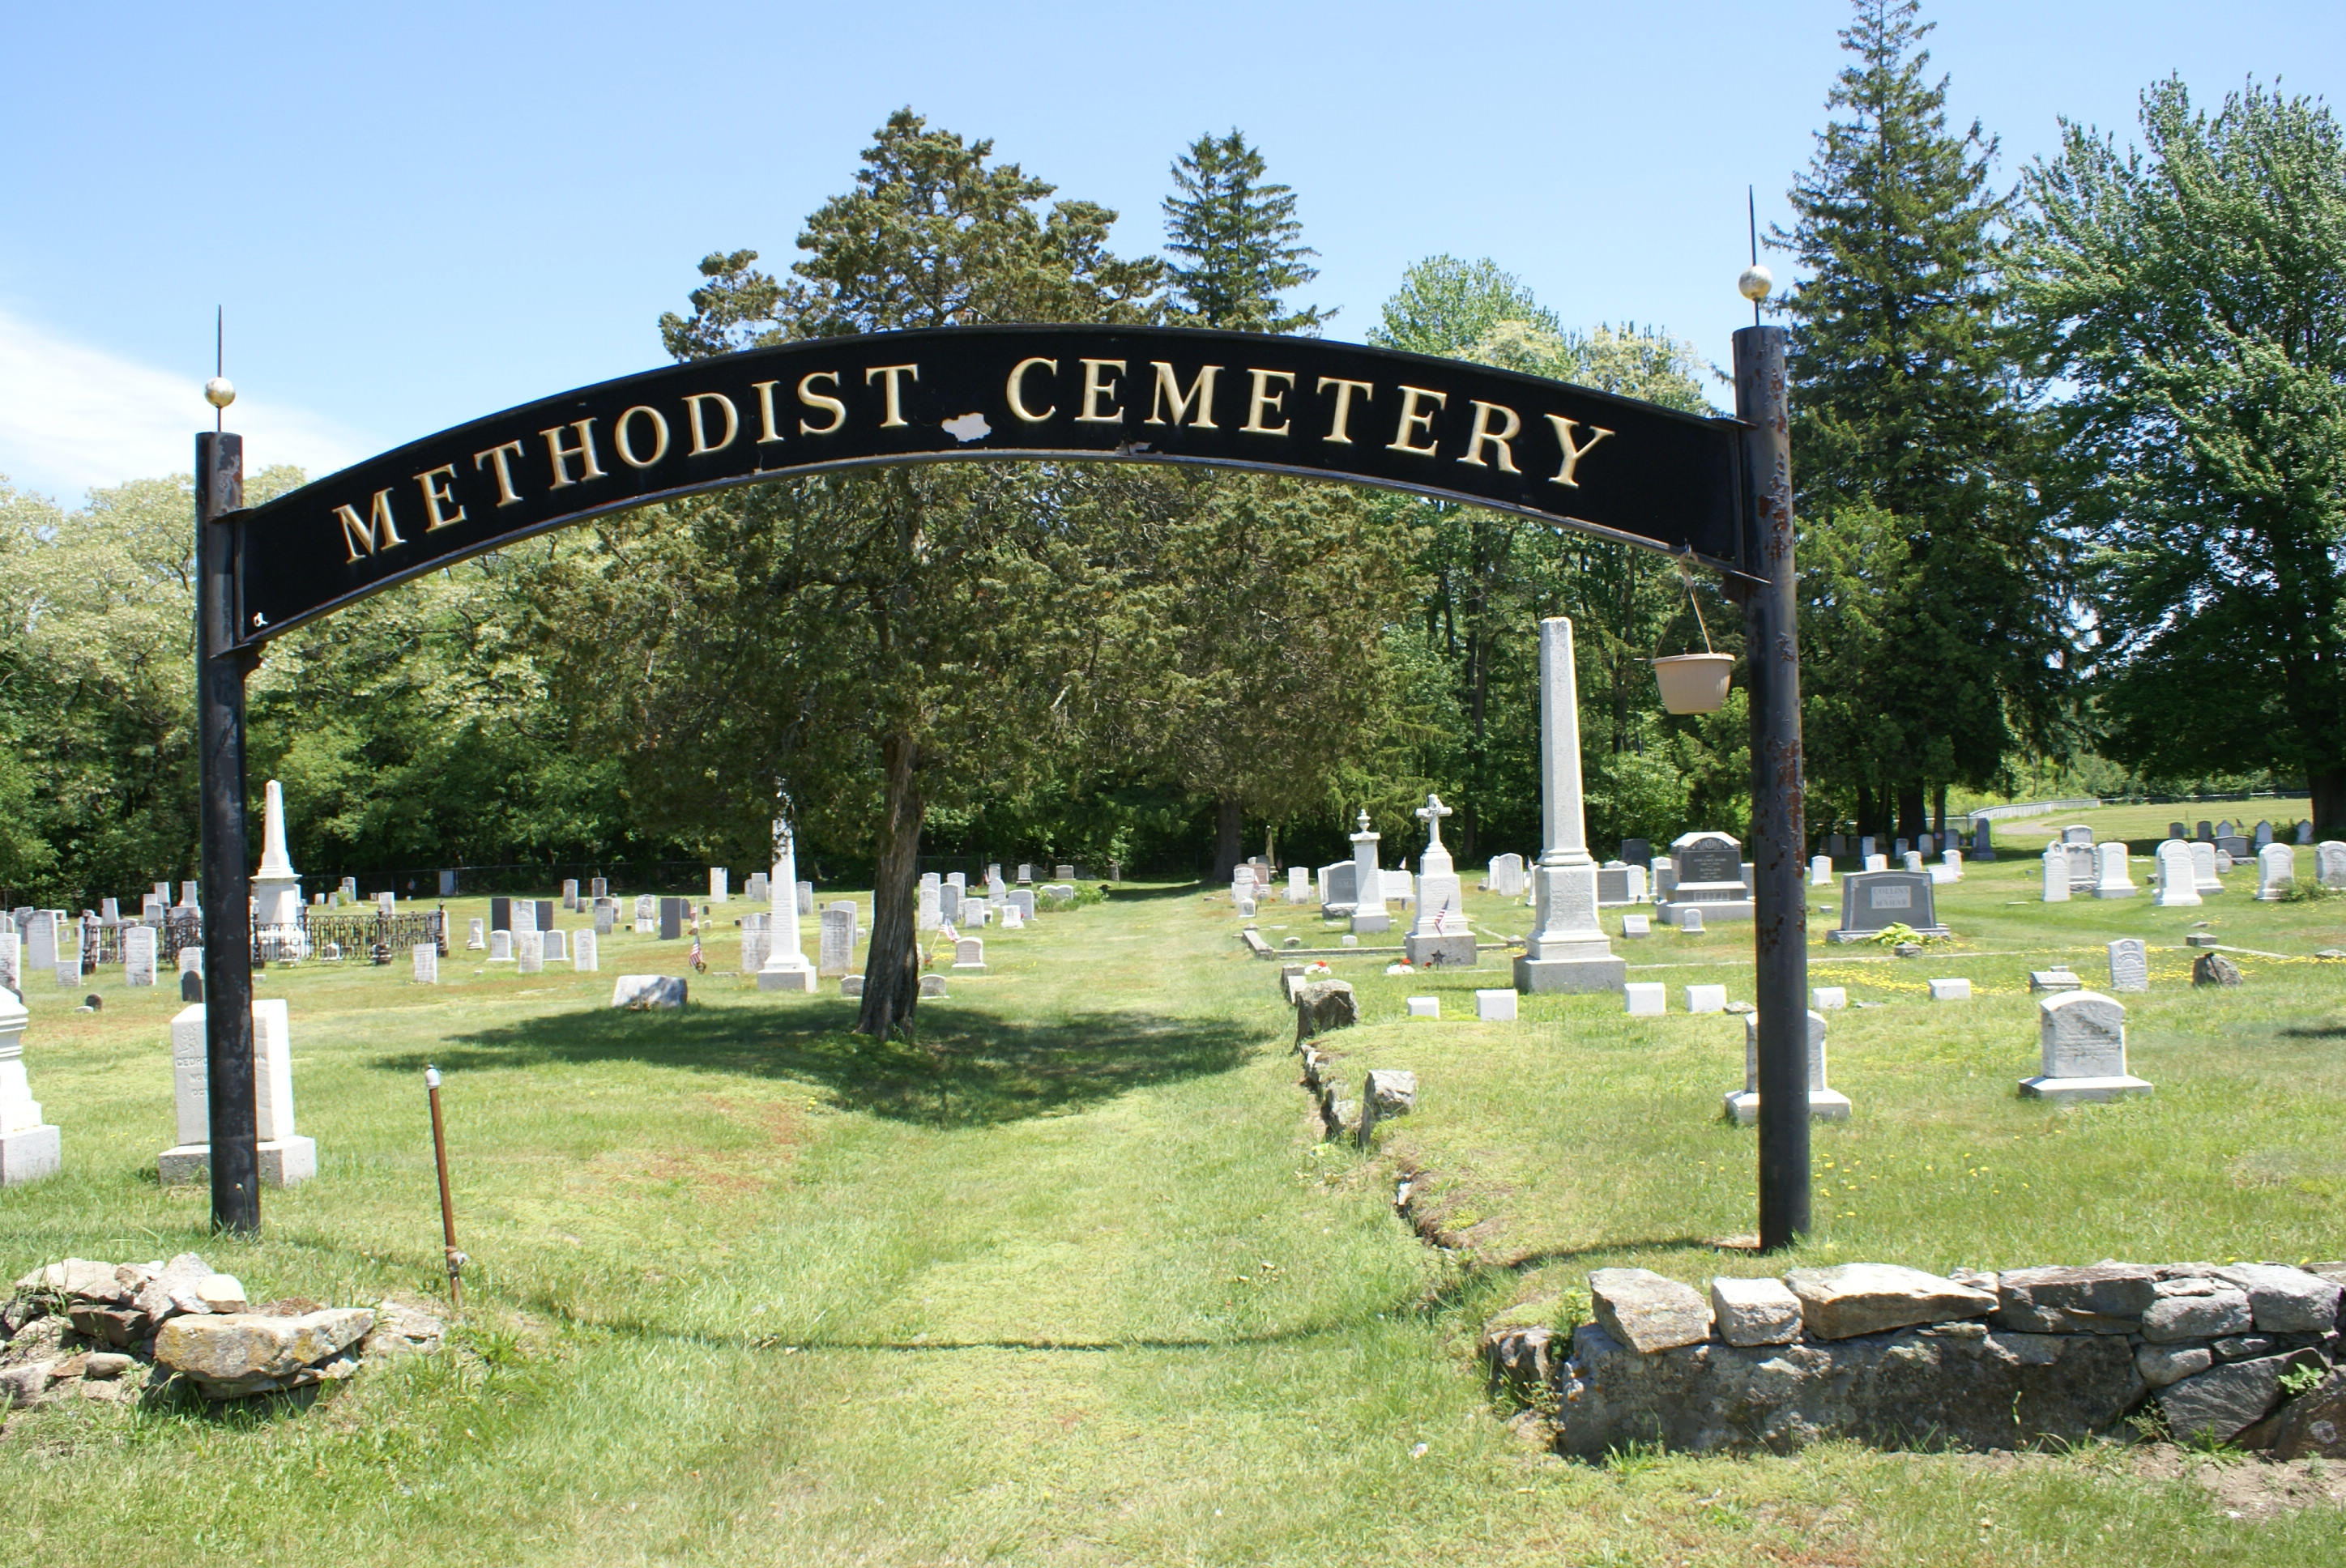 Smithtown AKA Methodist Cemetery